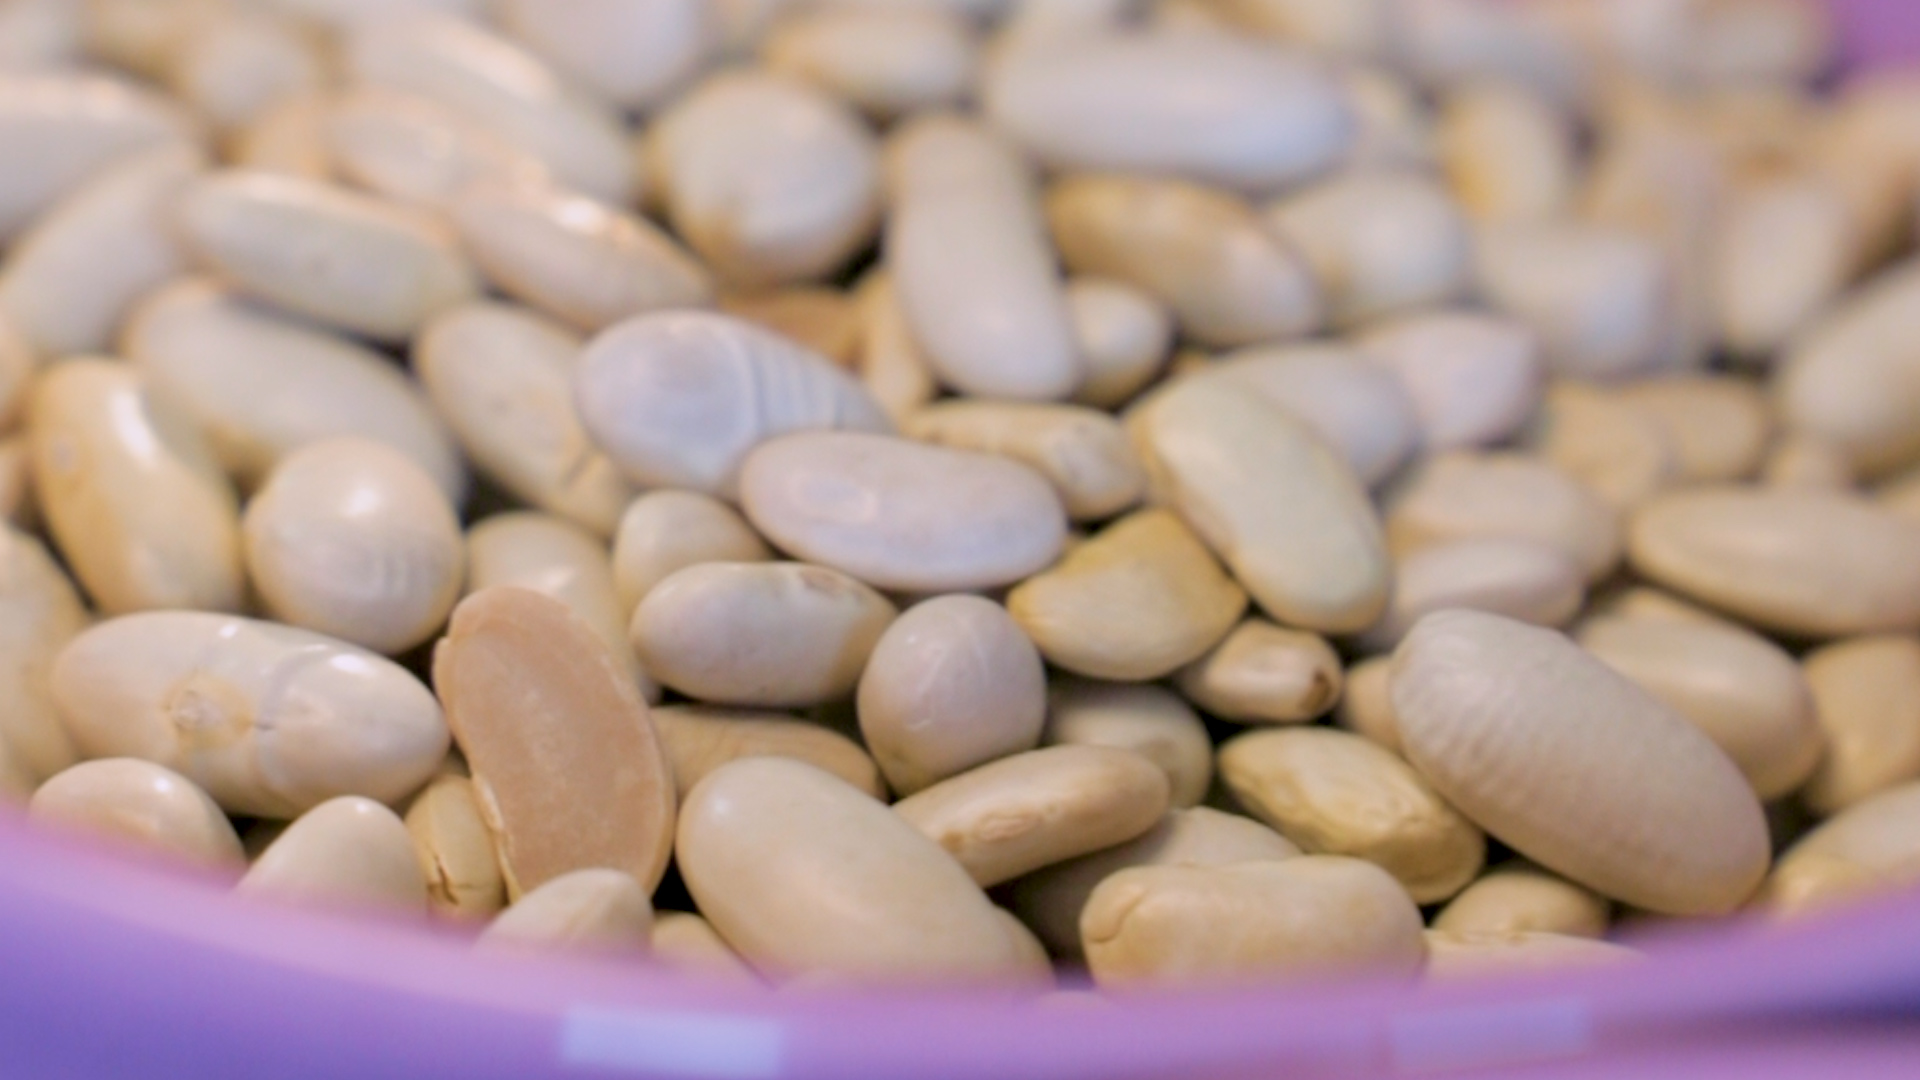 Las legumbres aportarían muchos beneficios contra el colesterol según expertos de Harvard 